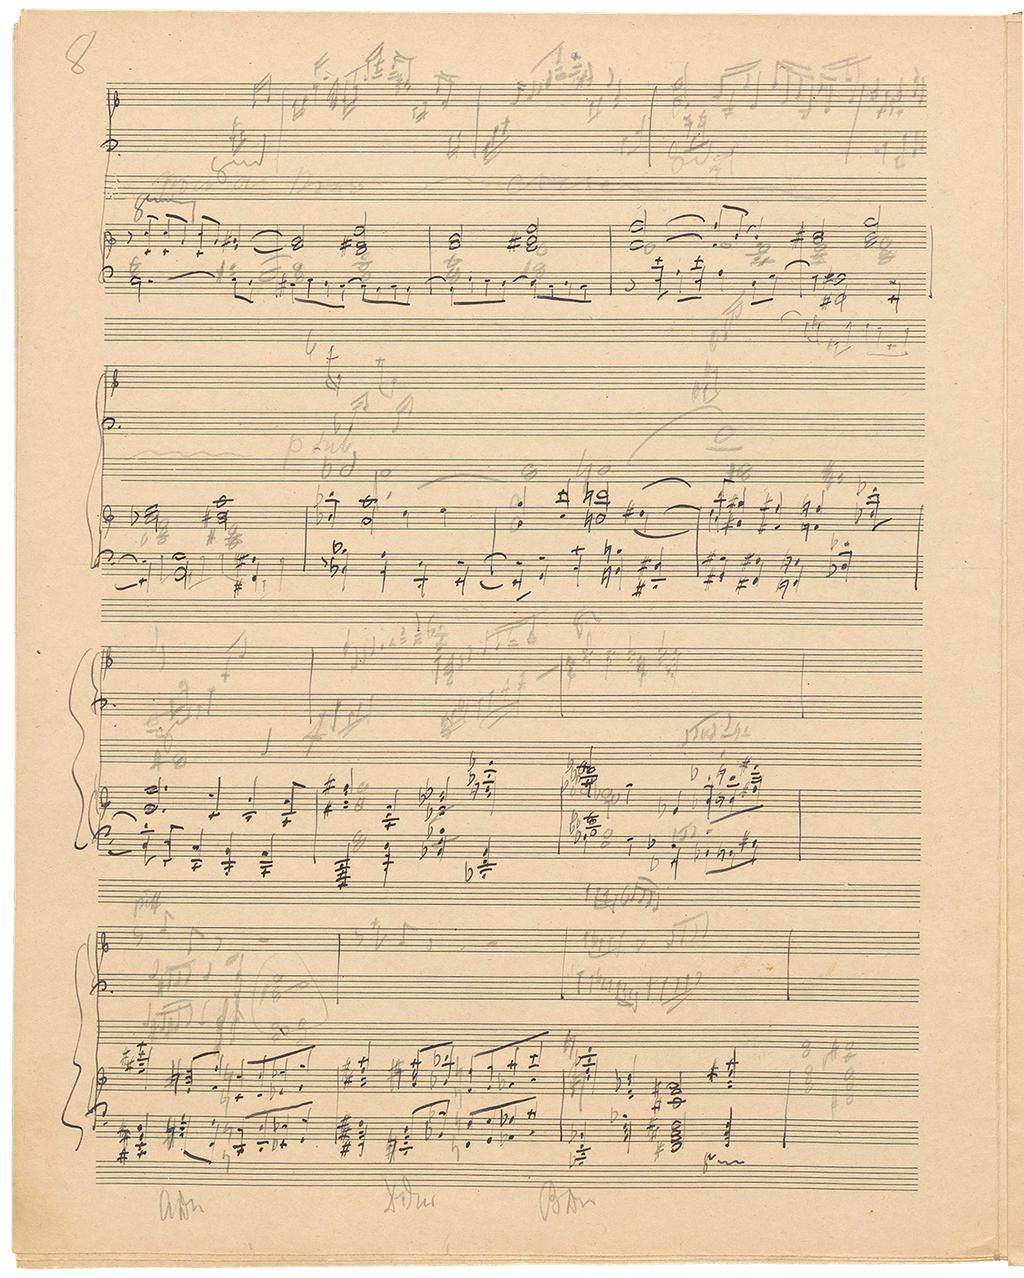 Kilde B, autogra, kladde, articel, ørste sats, t.04-8: orkestersatsen (i klavernotation) med blæk, mens antydninger a solostemmen eterølgende er tiløjet med blyant oven over orkestersatsen.